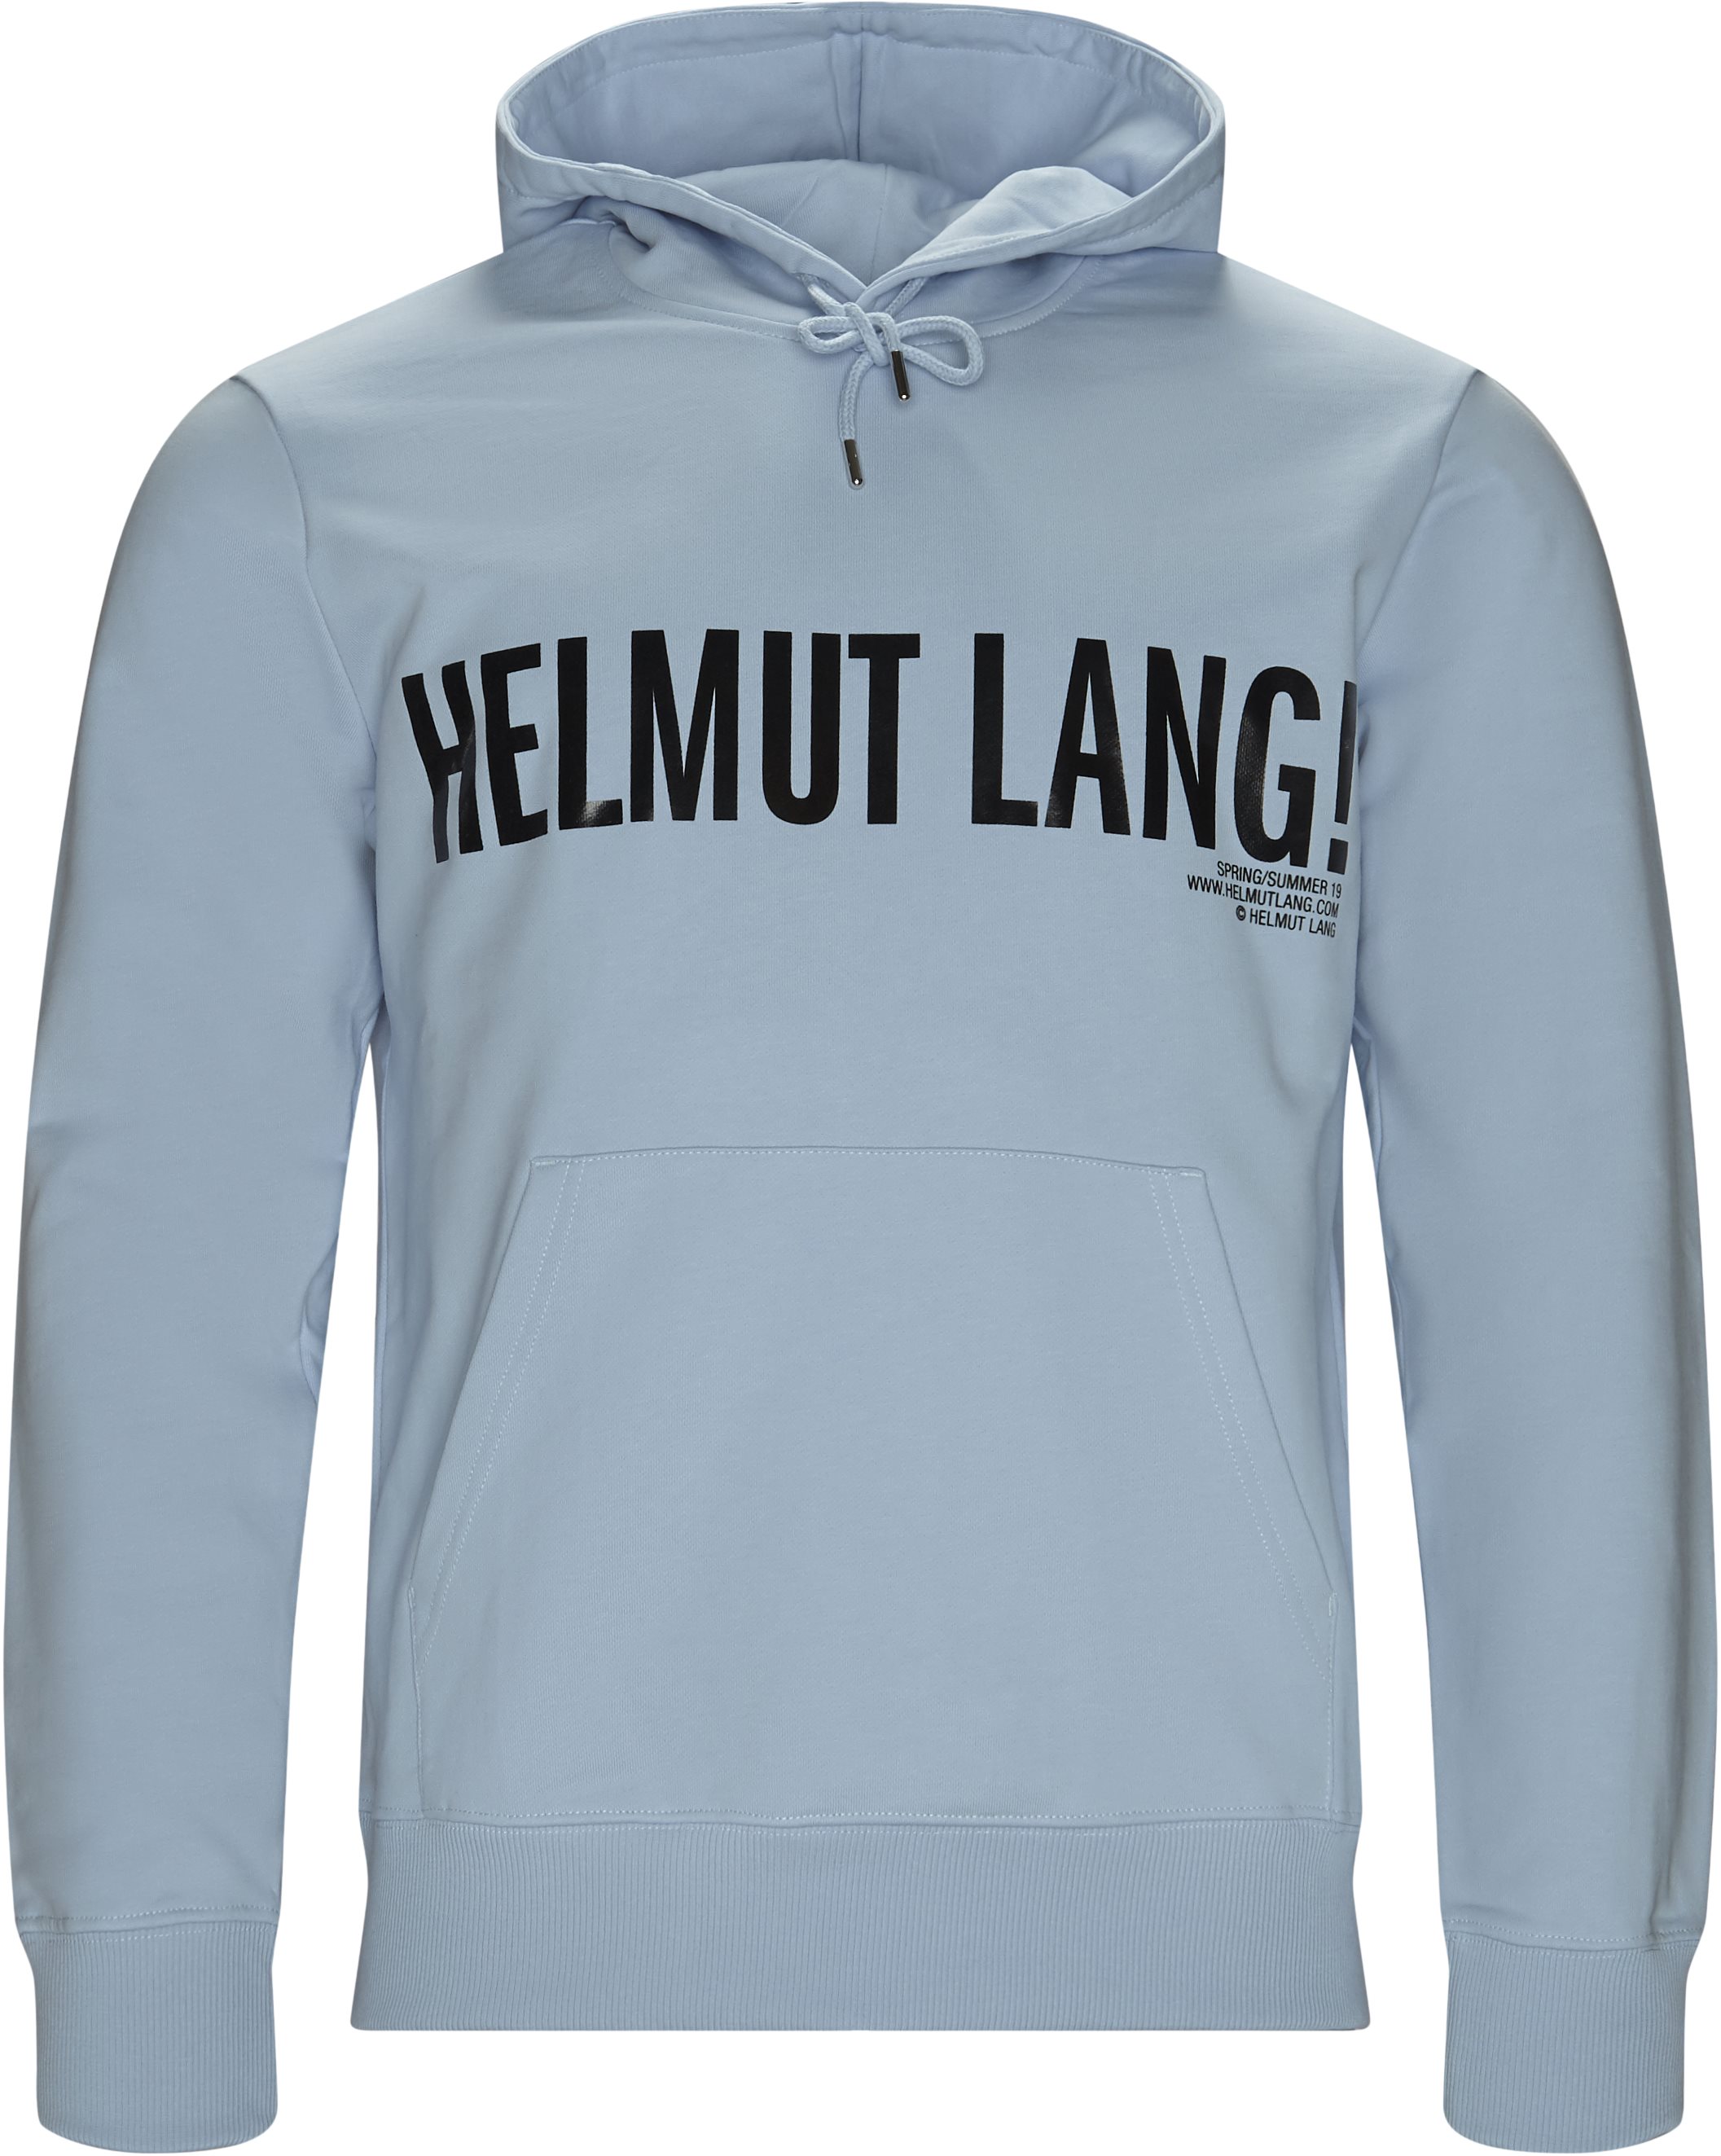 Reproducere Generelt sagt Baglæns J01KM501 Sweatshirts L.BLUE fra Helmut Lang 1100 DKK